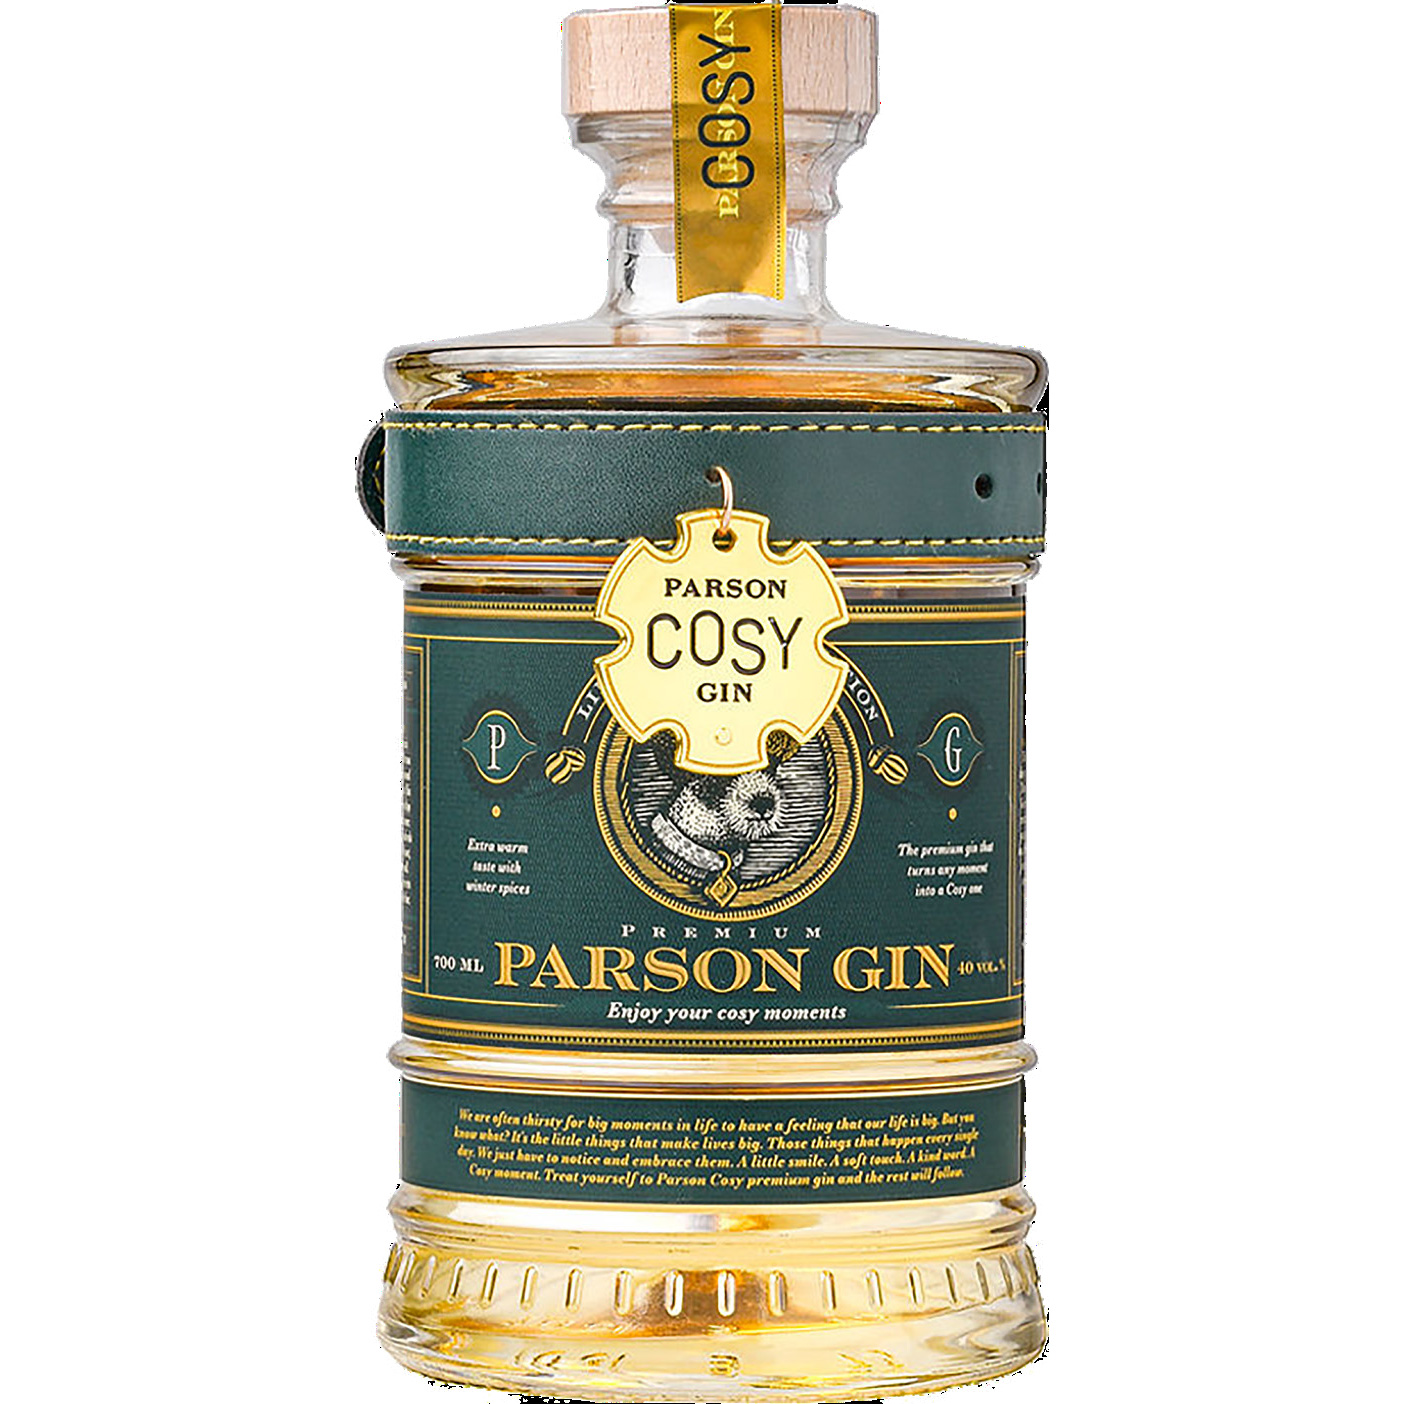 Se Parson Cosy Premium Gin hos Løvegården